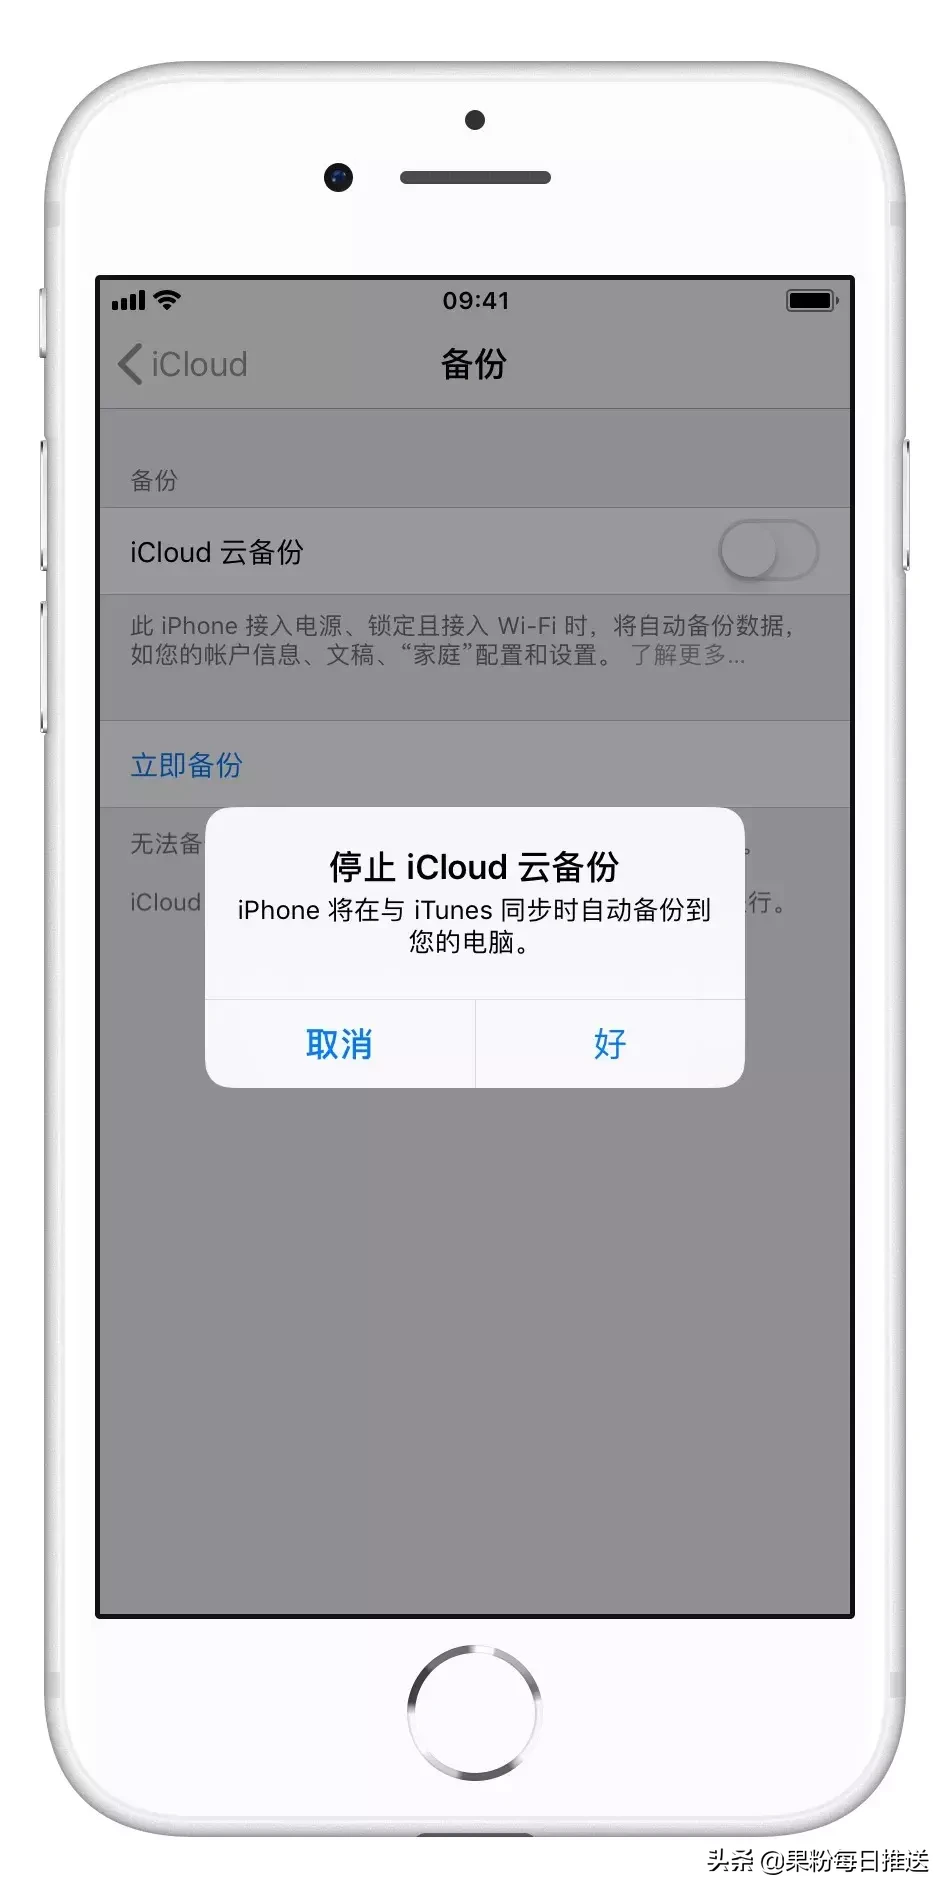 iPhone客户应当如何正确应用iCloud服务项目